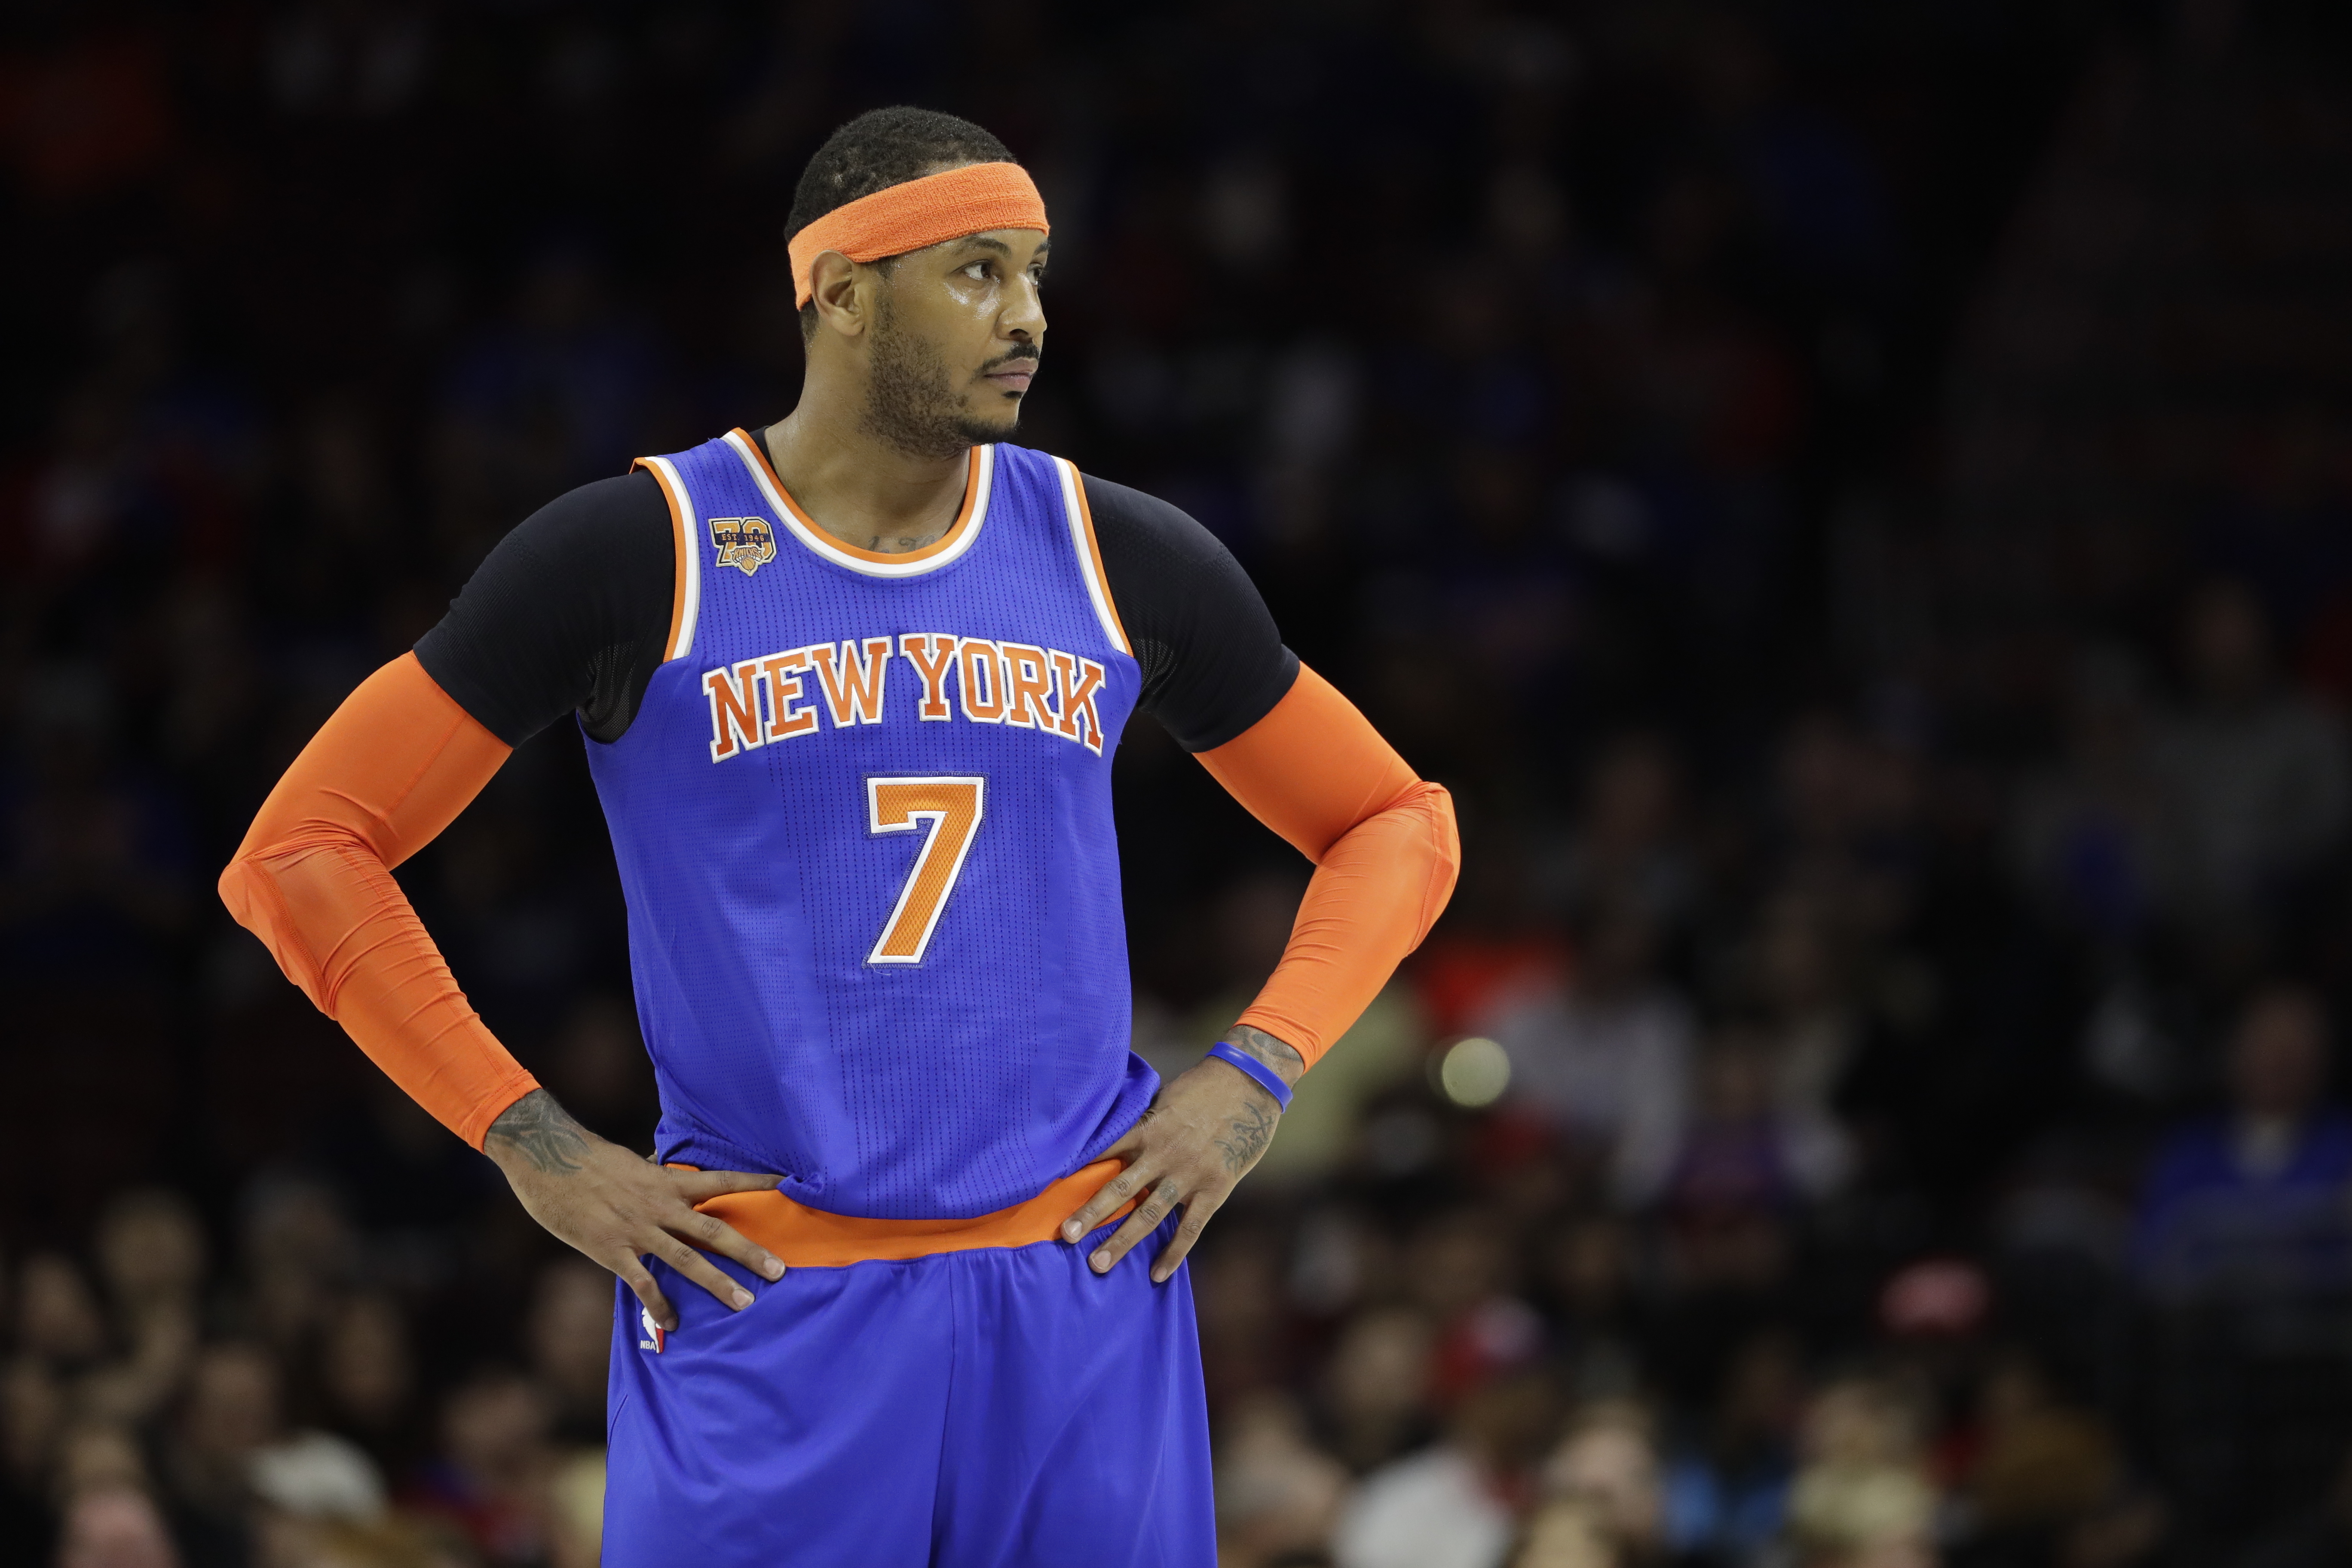 Adidas jersey nba star Carmelo Anthony jersey New York Knicks 7 men's  basketball sports fitness vest